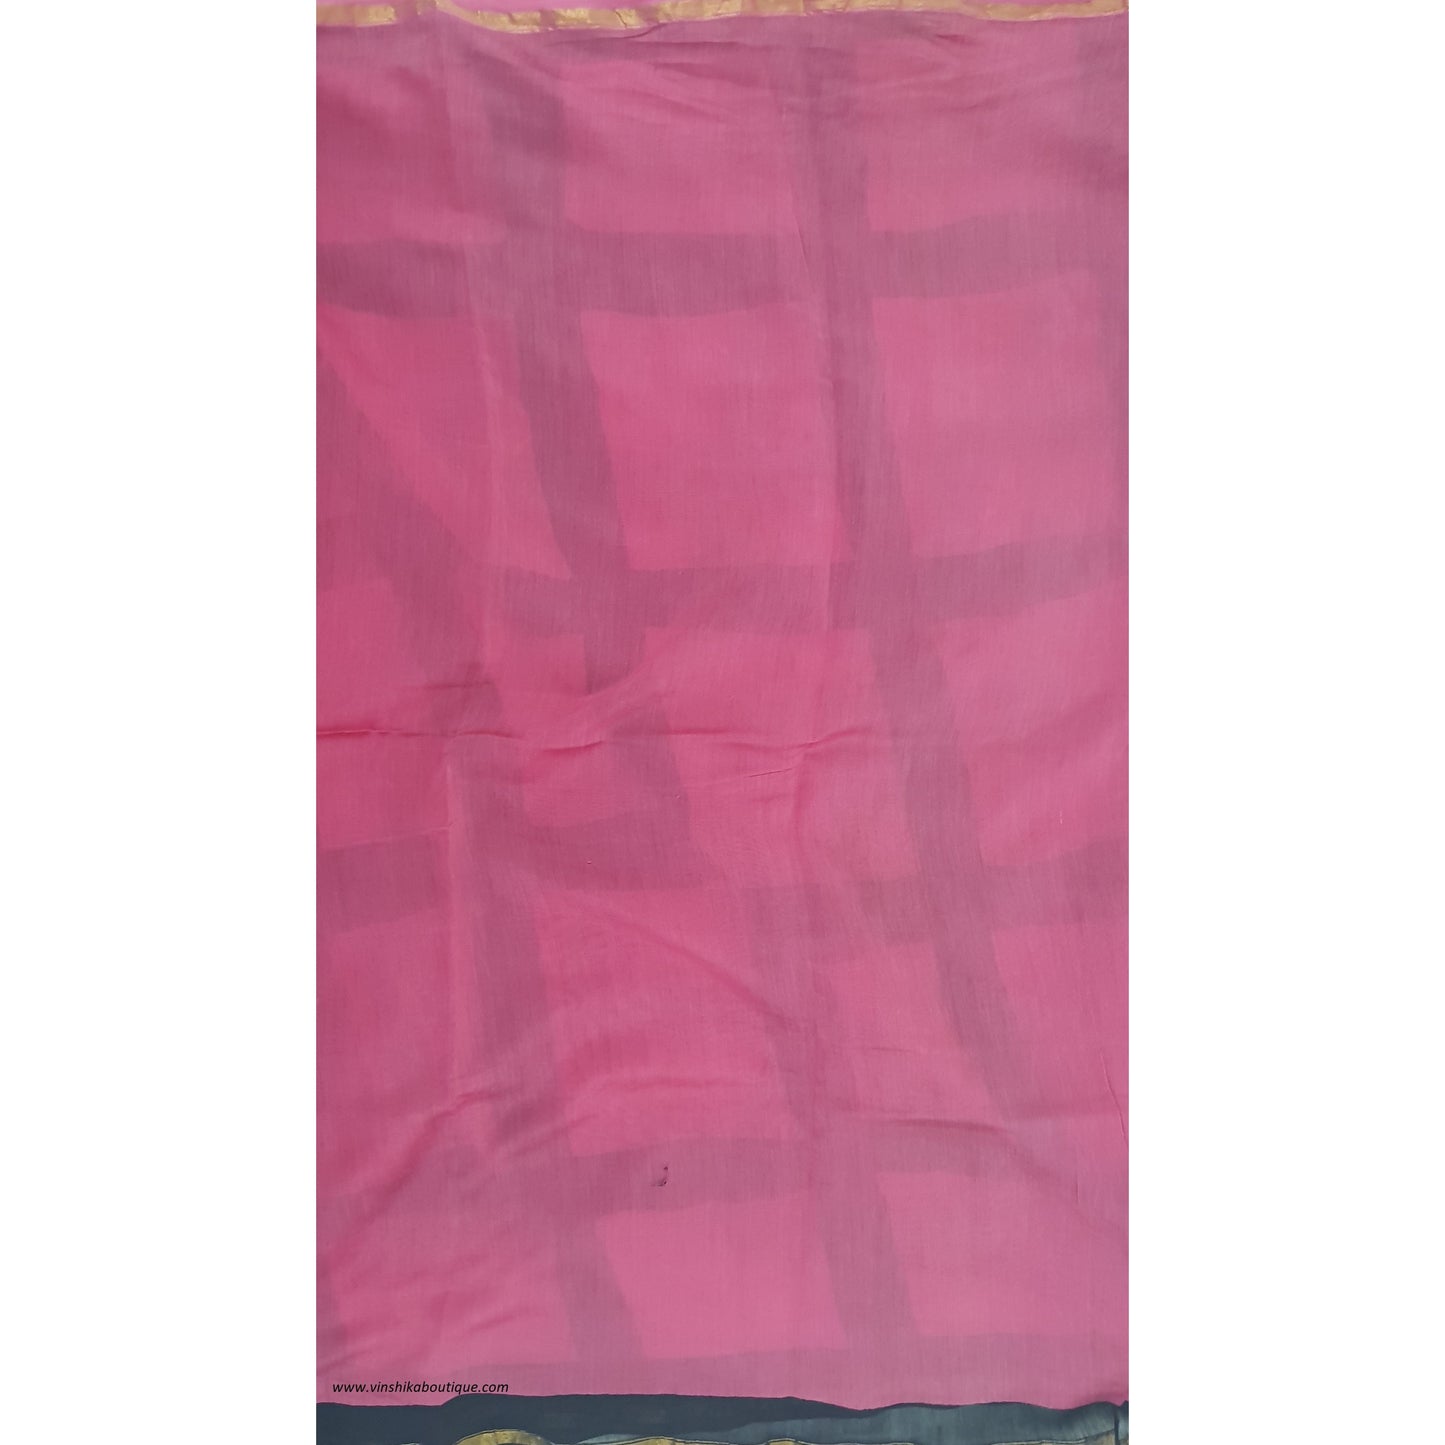 Pink and black color Bagru batik Natural Colors Chanderi Saree With small zari border - Vinshika